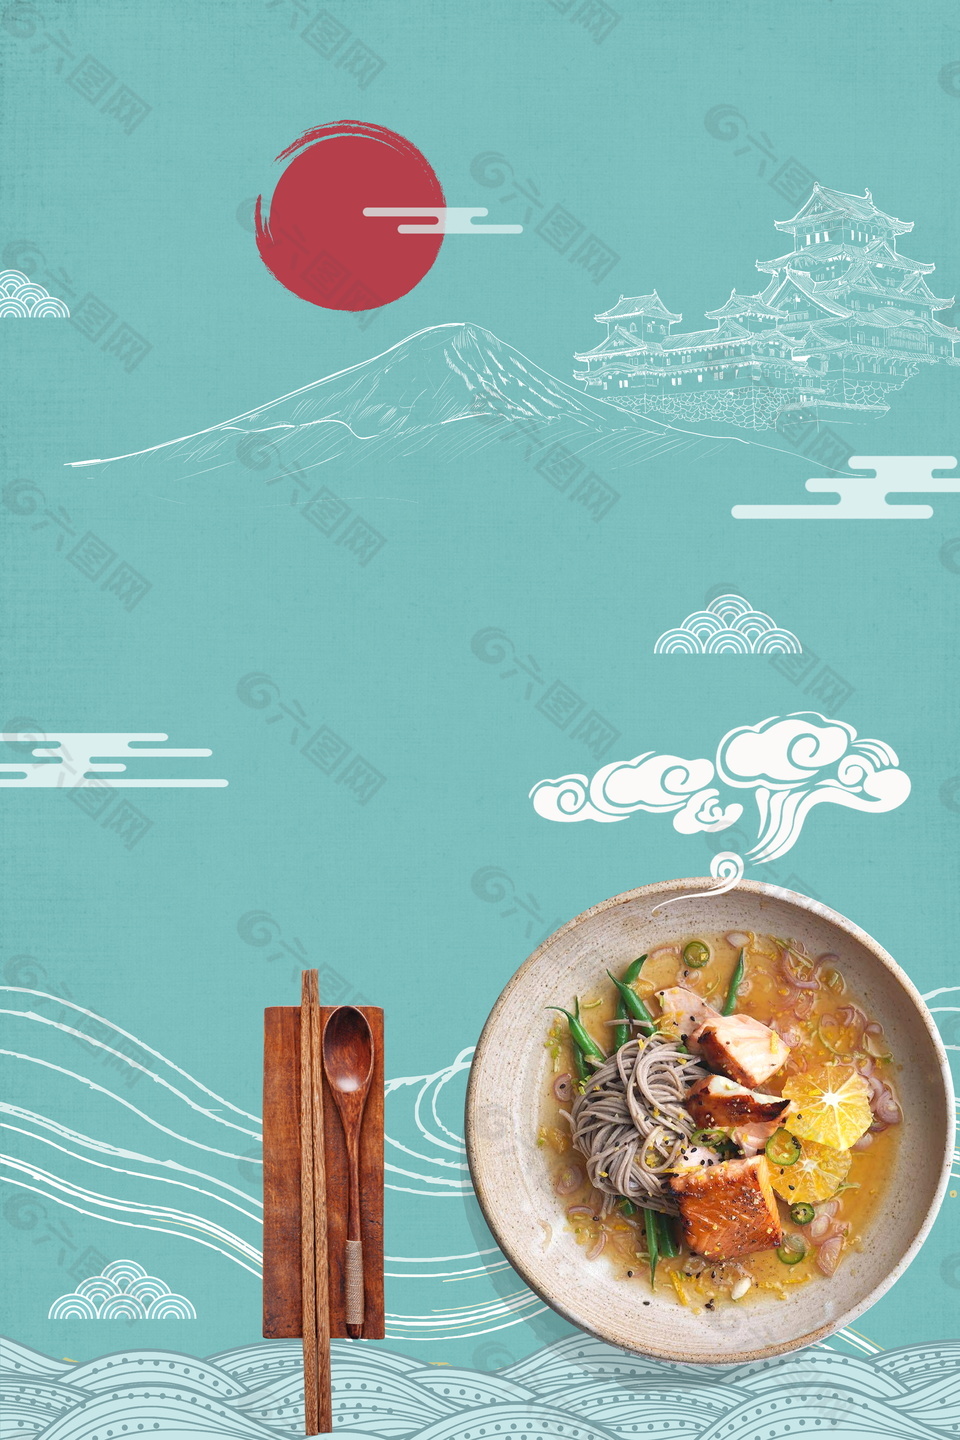 红日浅蓝背影日式拉面餐饮背景素材